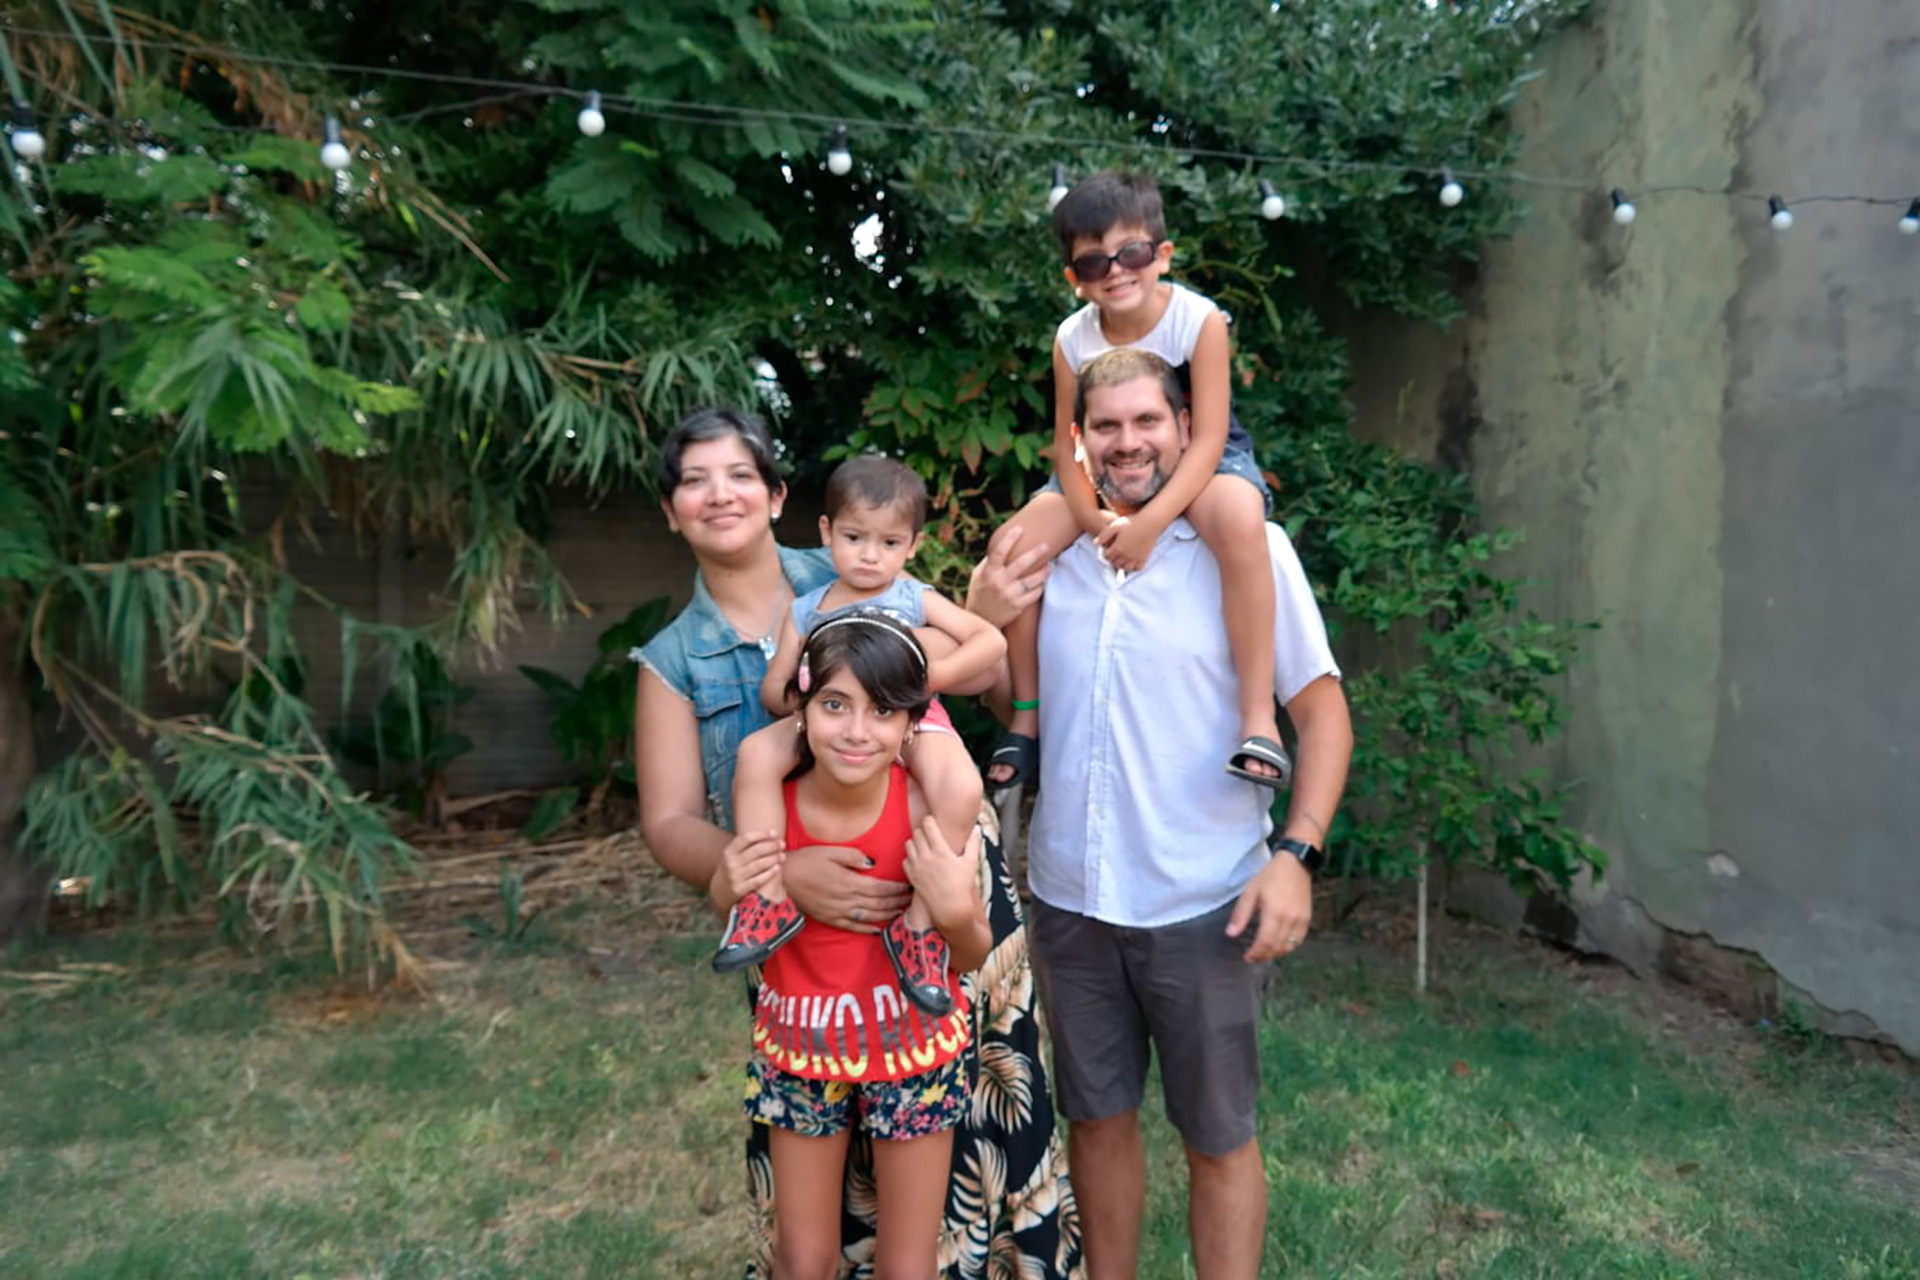 "Somos una familia trans", cuentan ellos a Infobae desde Lanús, donde viven